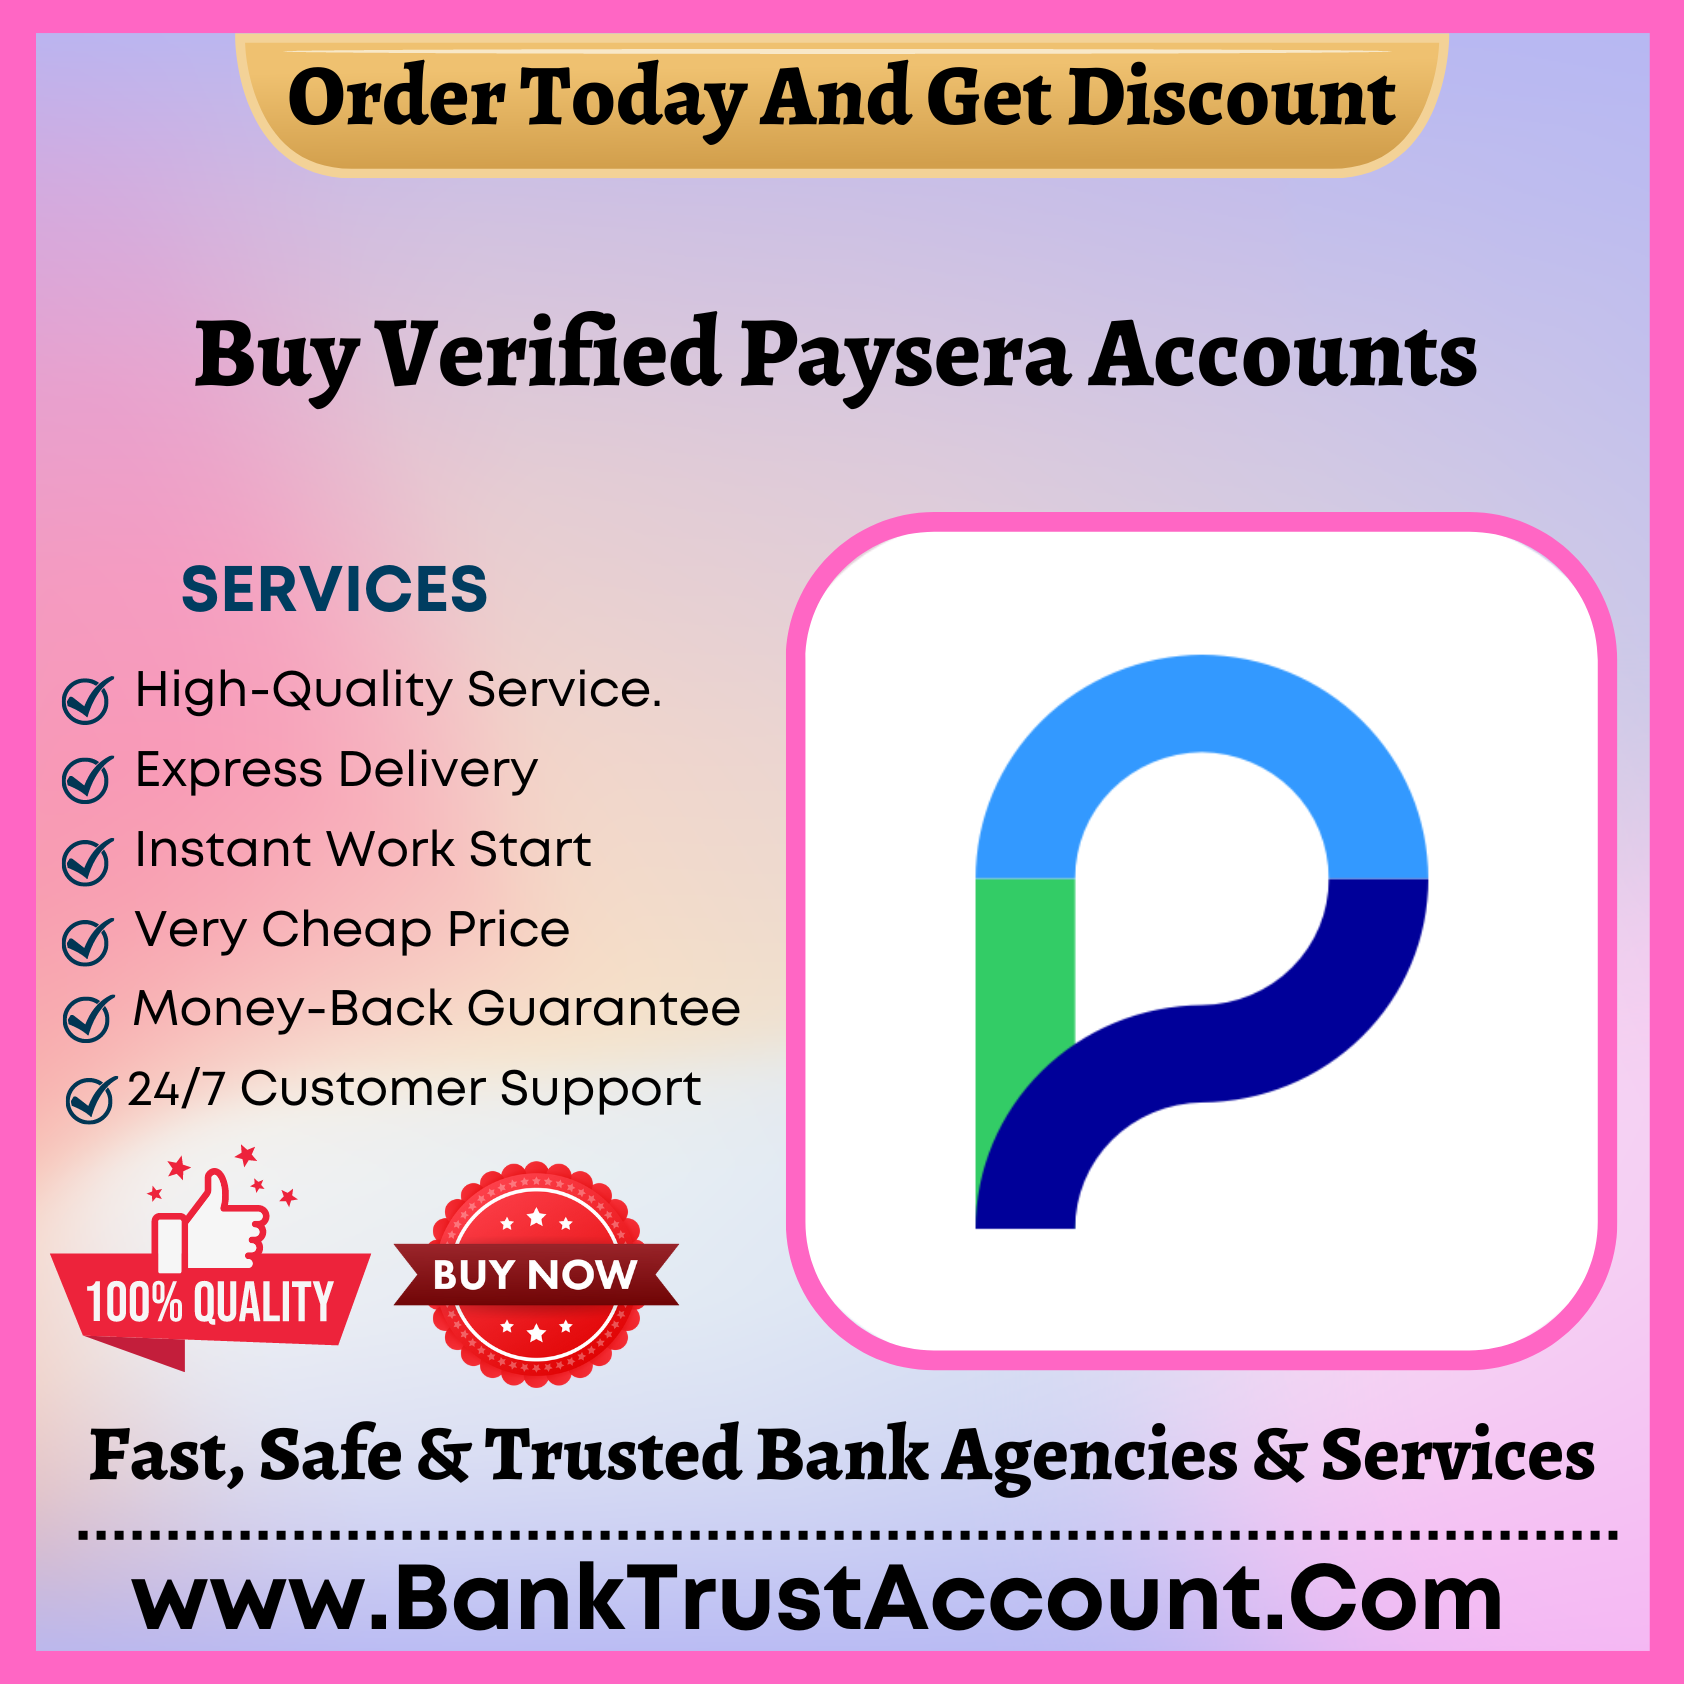 Buy Verified Paysera Accounts - 100% Fully KYC Verified - BankTrustAccount